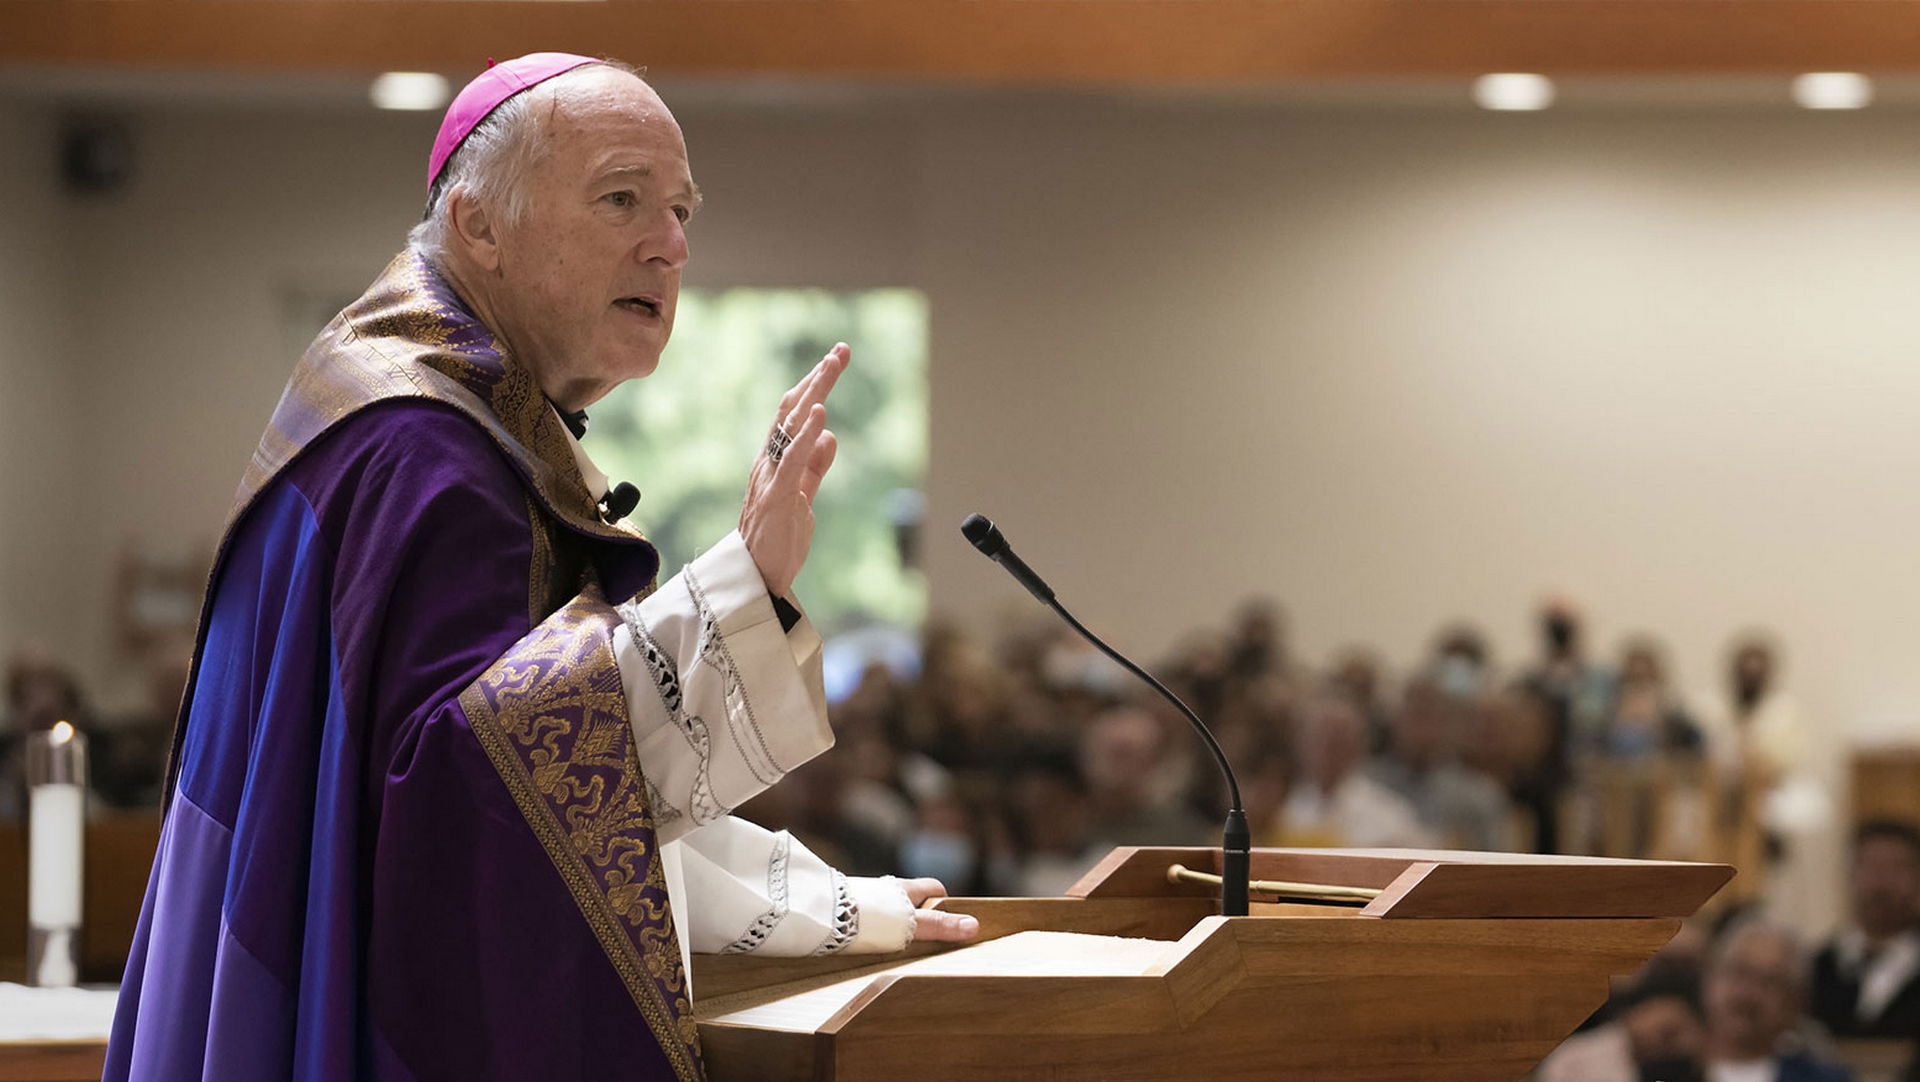 Le futur cardinal Robert McElroy est évêque de San Diego en Californie | © sdcatholic.org